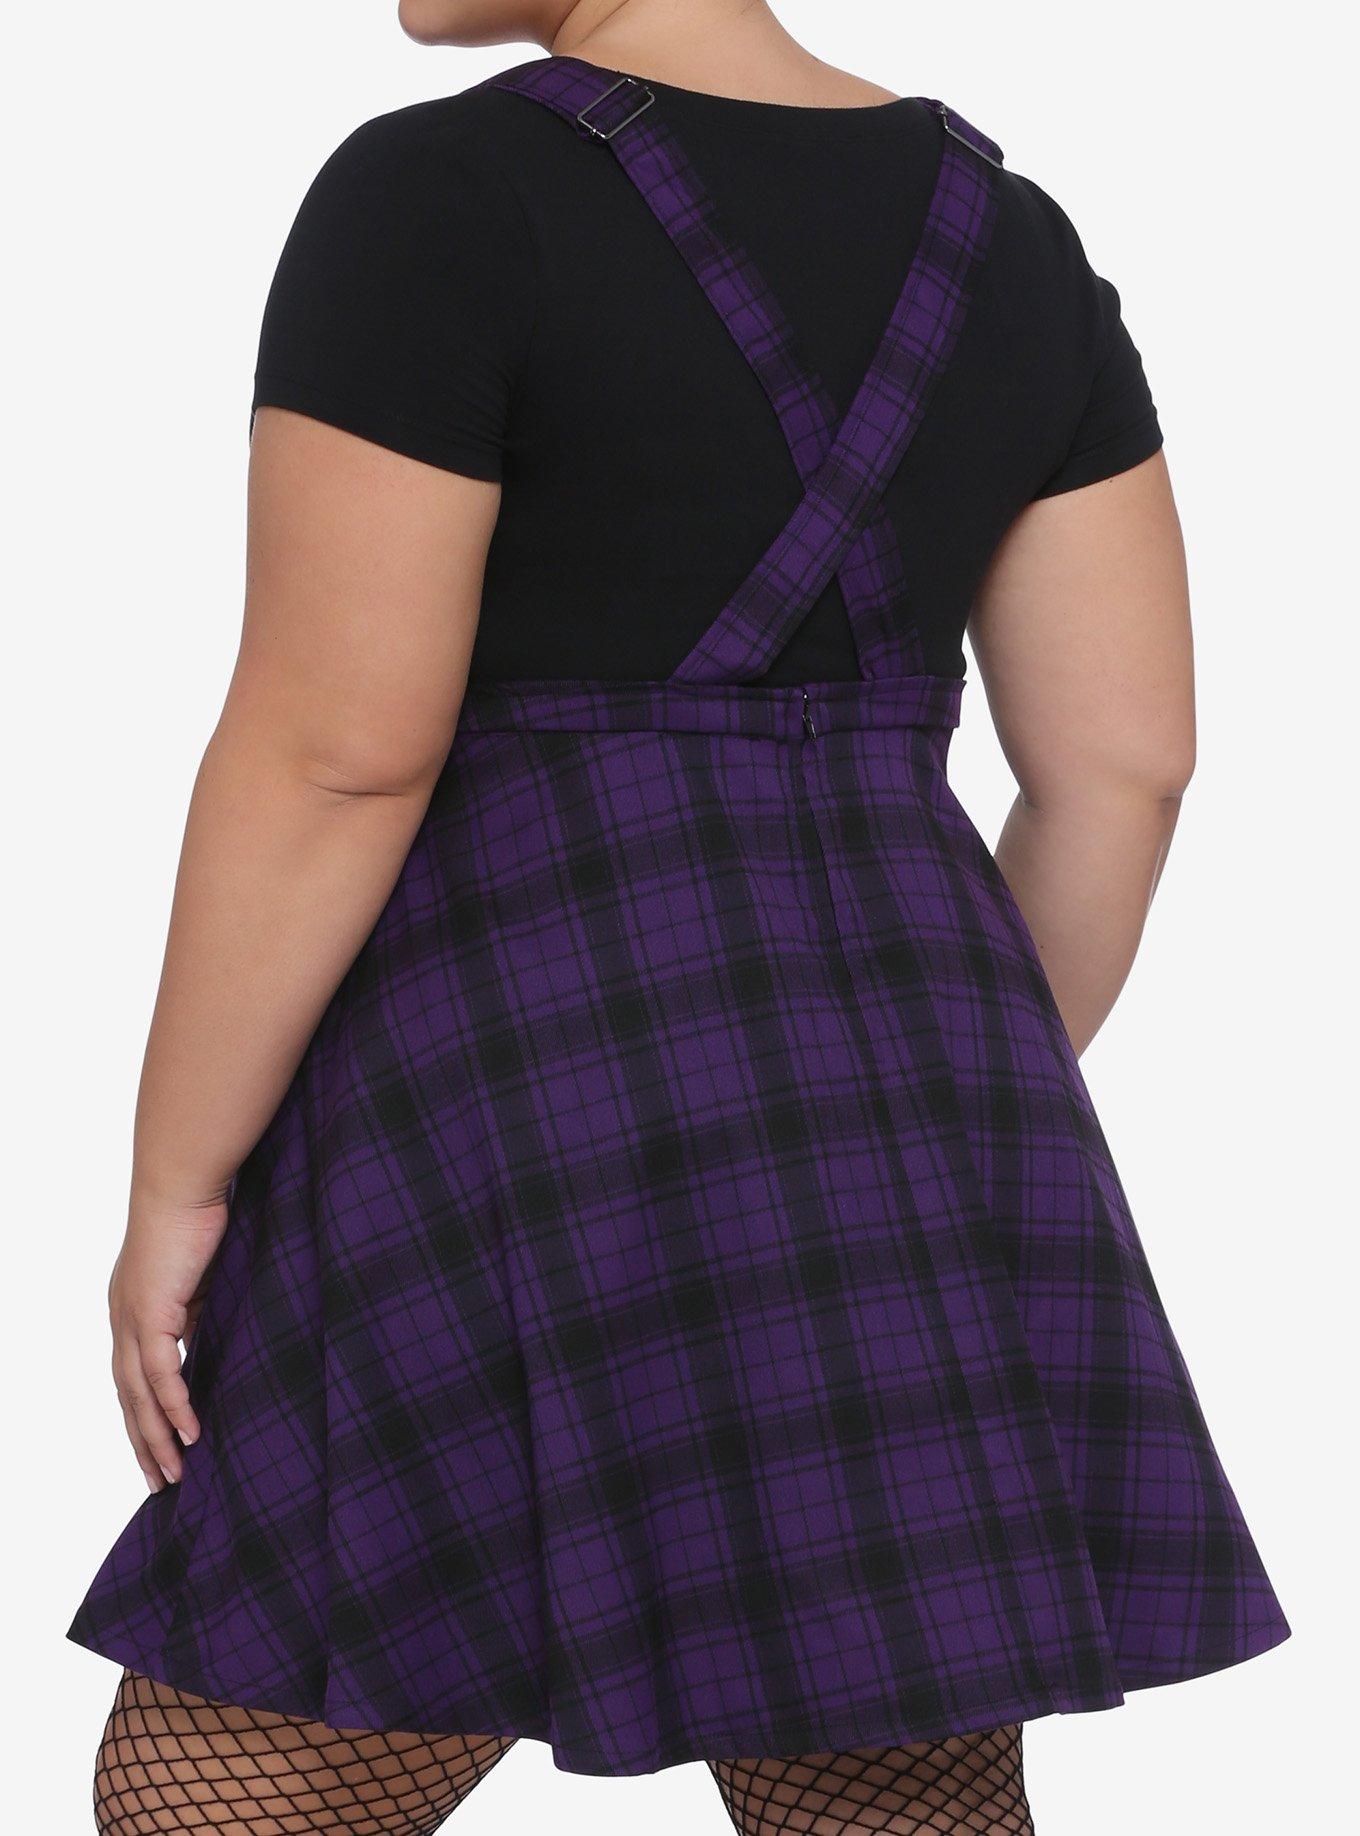 Black & Purple Plaid Skirtall Plus Size, PLAID - PURPLE, alternate